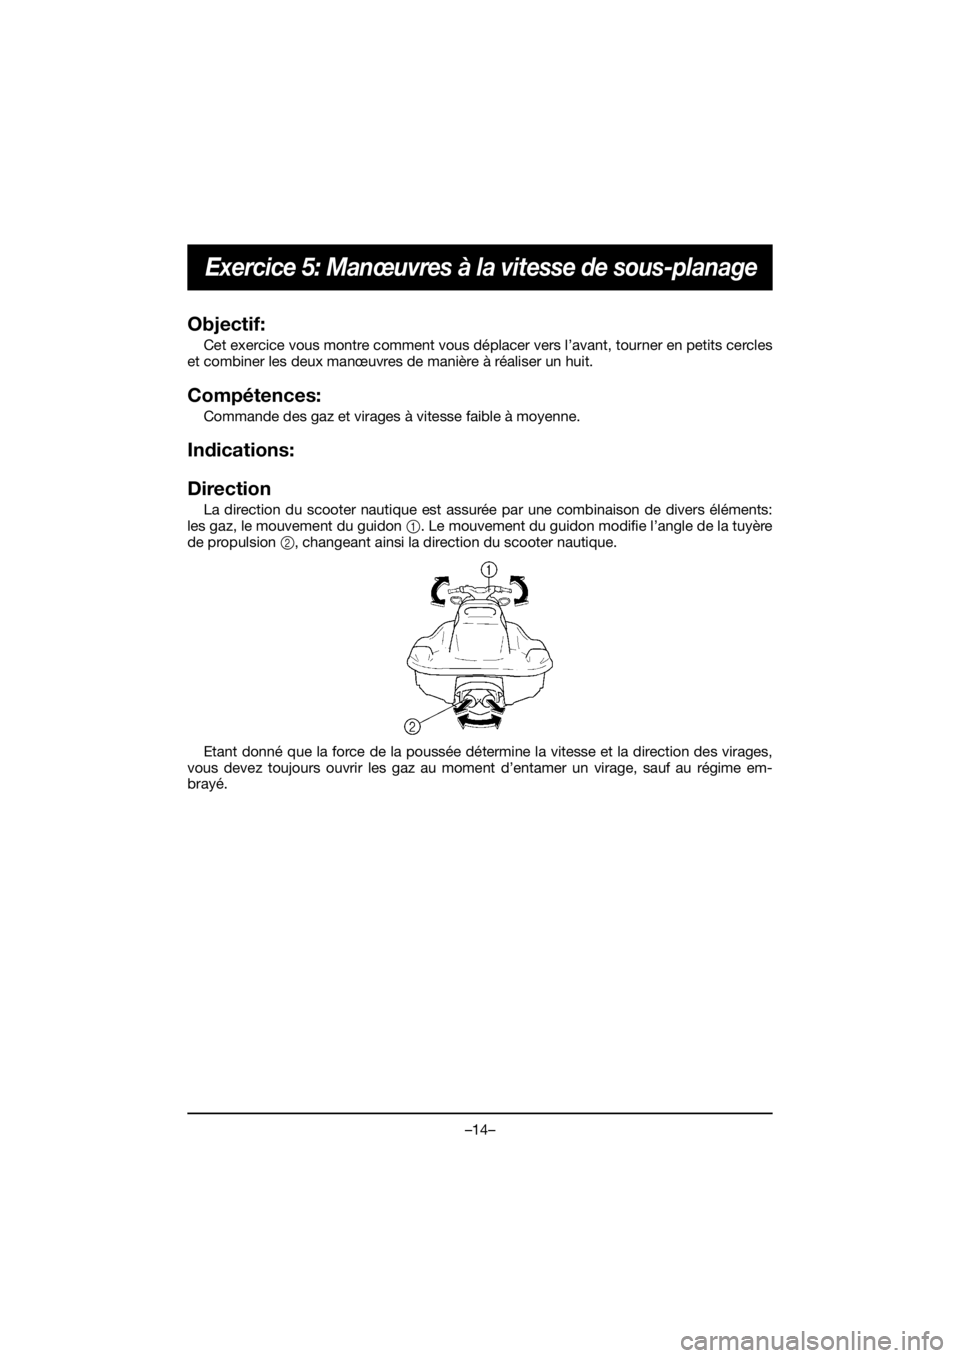 YAMAHA EX 2020  Manual de utilização (in Portuguese) –14–
Exercice 5: Manœuvres à la vitesse de sous-planage
Objectif: 
Cet exercice vous montre comment vous déplacer vers l’avant, tourner en petits cercles
et combiner les deux manœuvres de ma